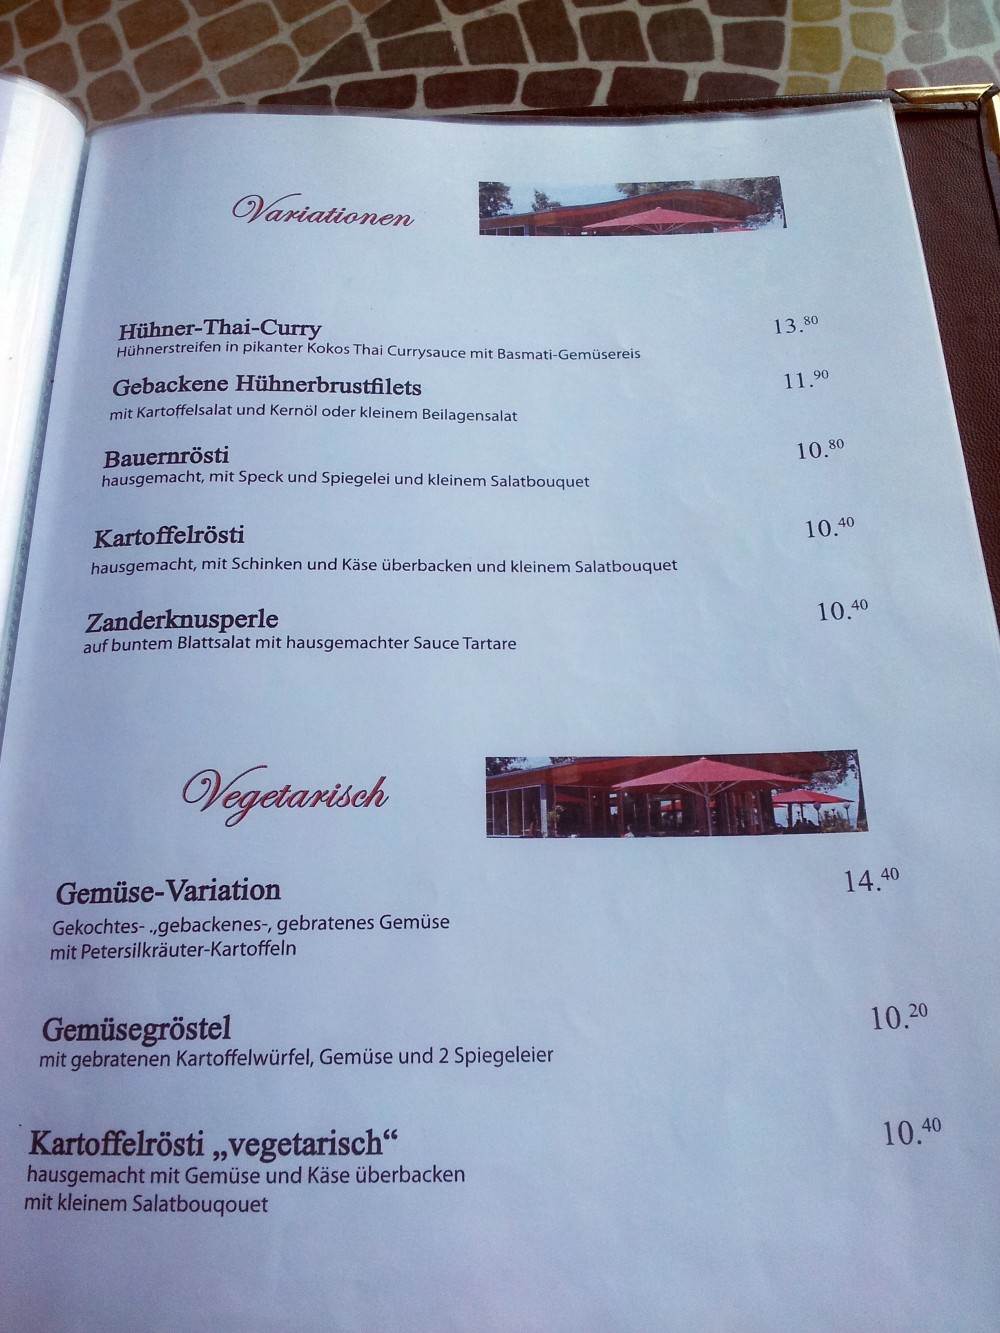 "Variationen" und Vegetarisches. - Seerestaurant Glashaus - Höchst